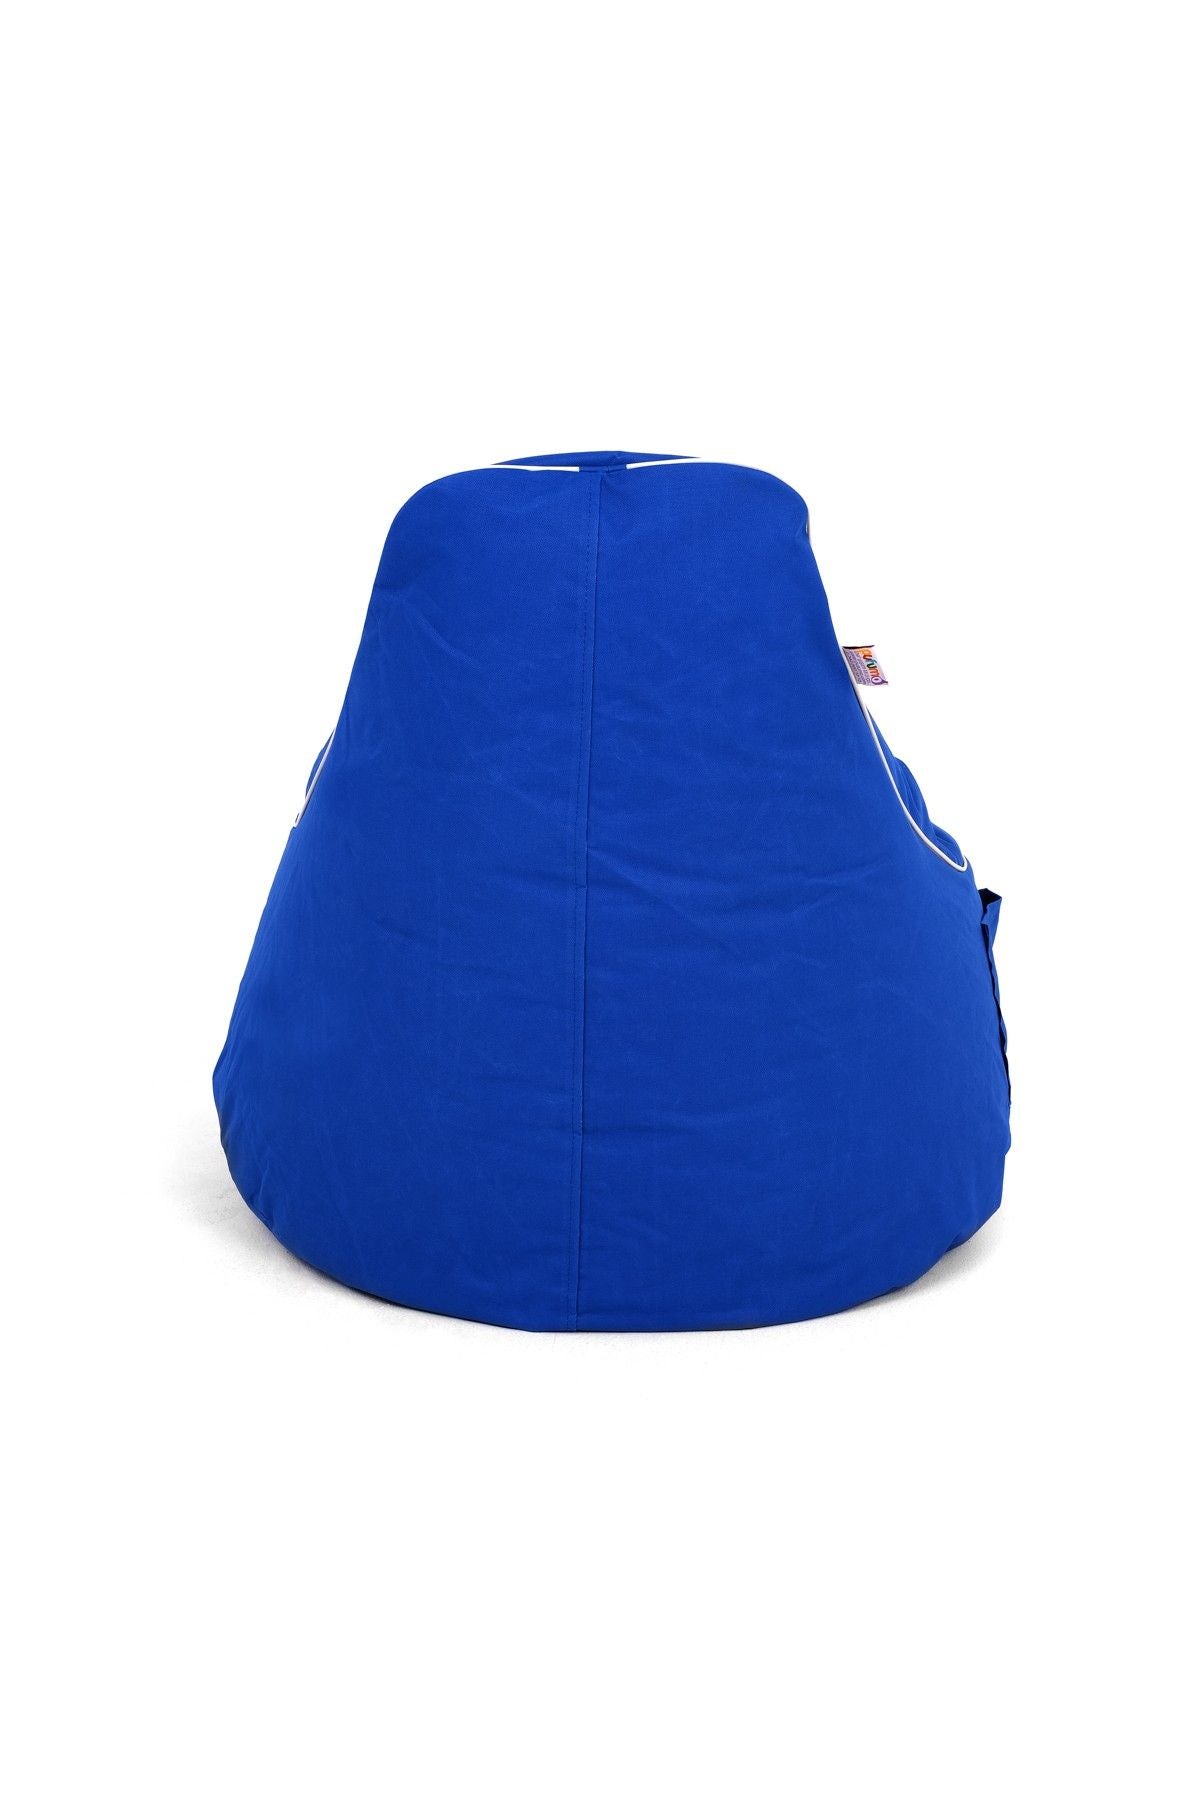 Golf - Blue - Bean Bag